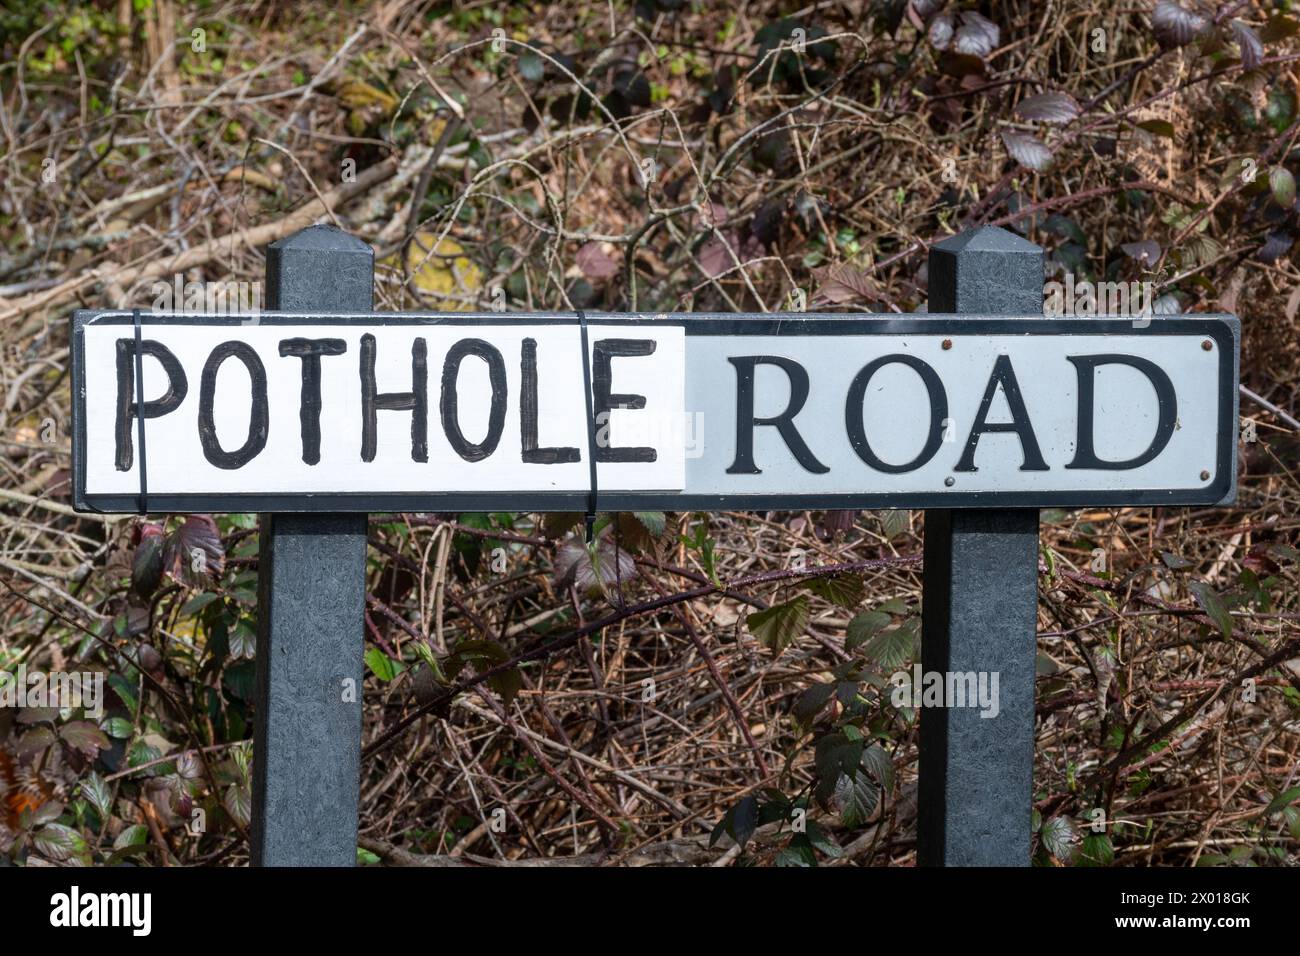 Pothole Road, panneau routier avec le nom réel de la rue remplacé par le mot Pothole probablement par le conducteur local frustré par les nids de poule non réparés, Royaume-Uni Banque D'Images